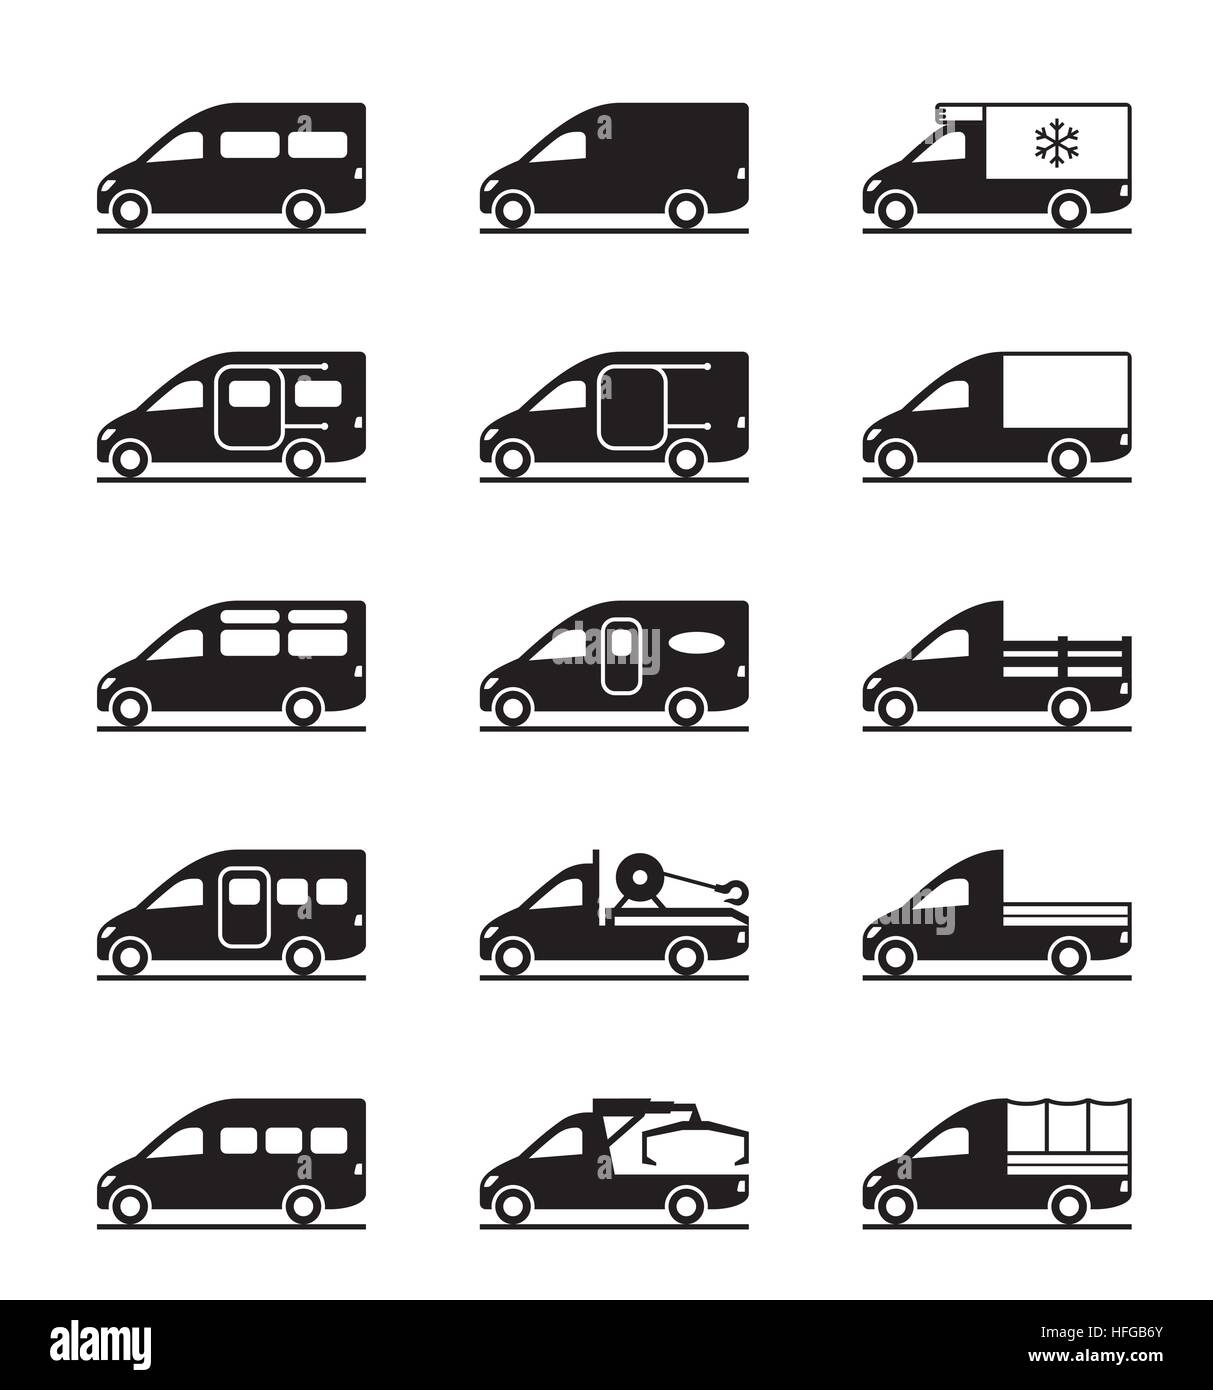 Différents types de camionnettes et fourgonnettes - vector illustration Illustration de Vecteur